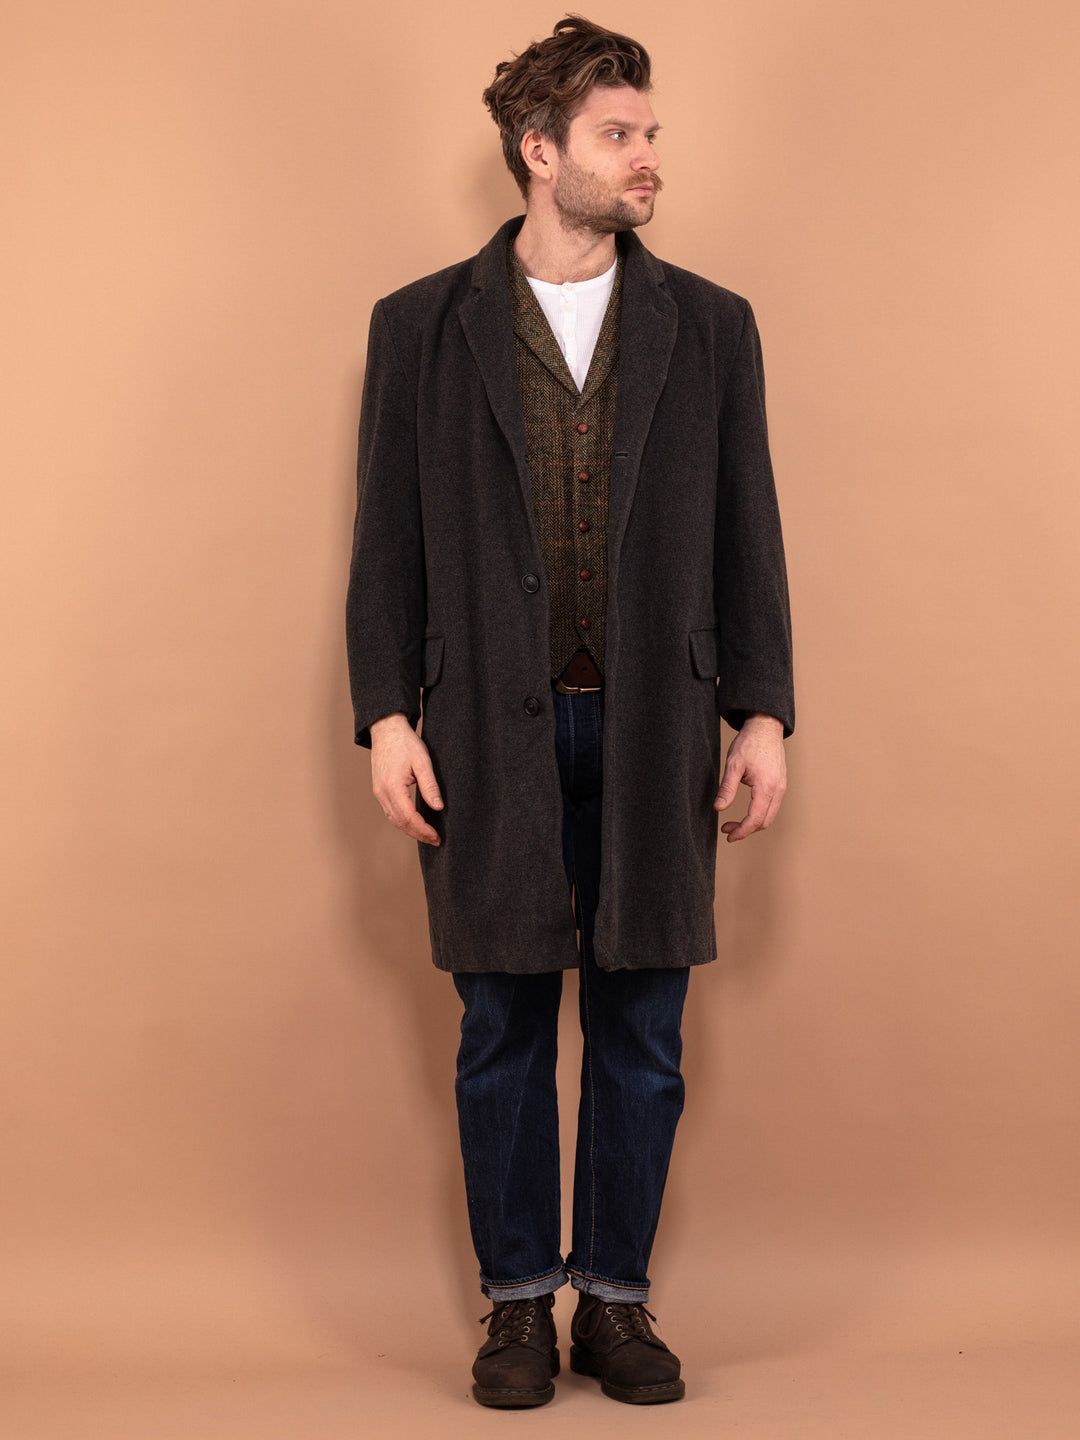 Men's Wool Coat 00s, Wool Coat In Gray Size M, Vintage Wool Coat, Spring Wool Coat, Casual Wool Coat, Men Minimalist Coat, Vintage Outerwear